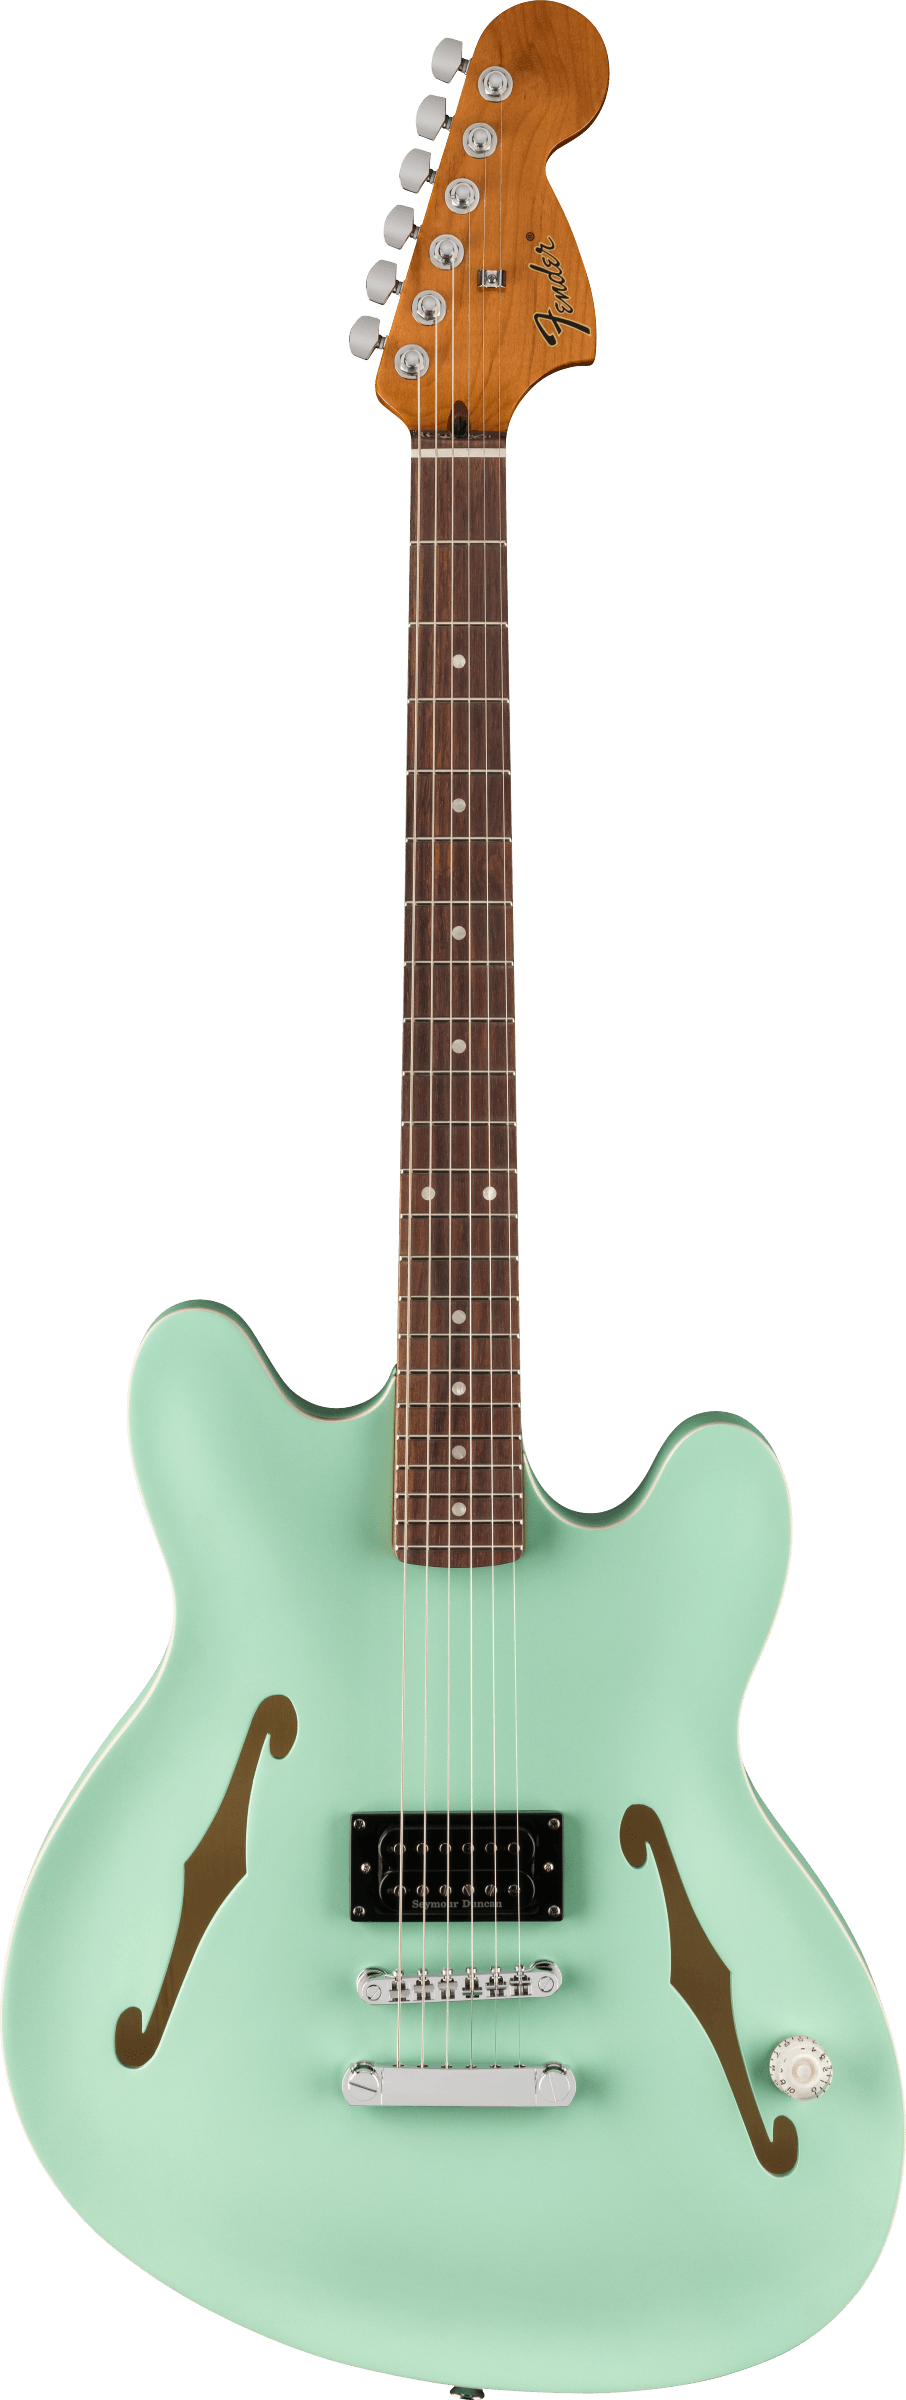 Full frontal of Fender Tom DeLonge Starcaster Rosewood Fingerboard Chrome Hardware Satin Surf Green.